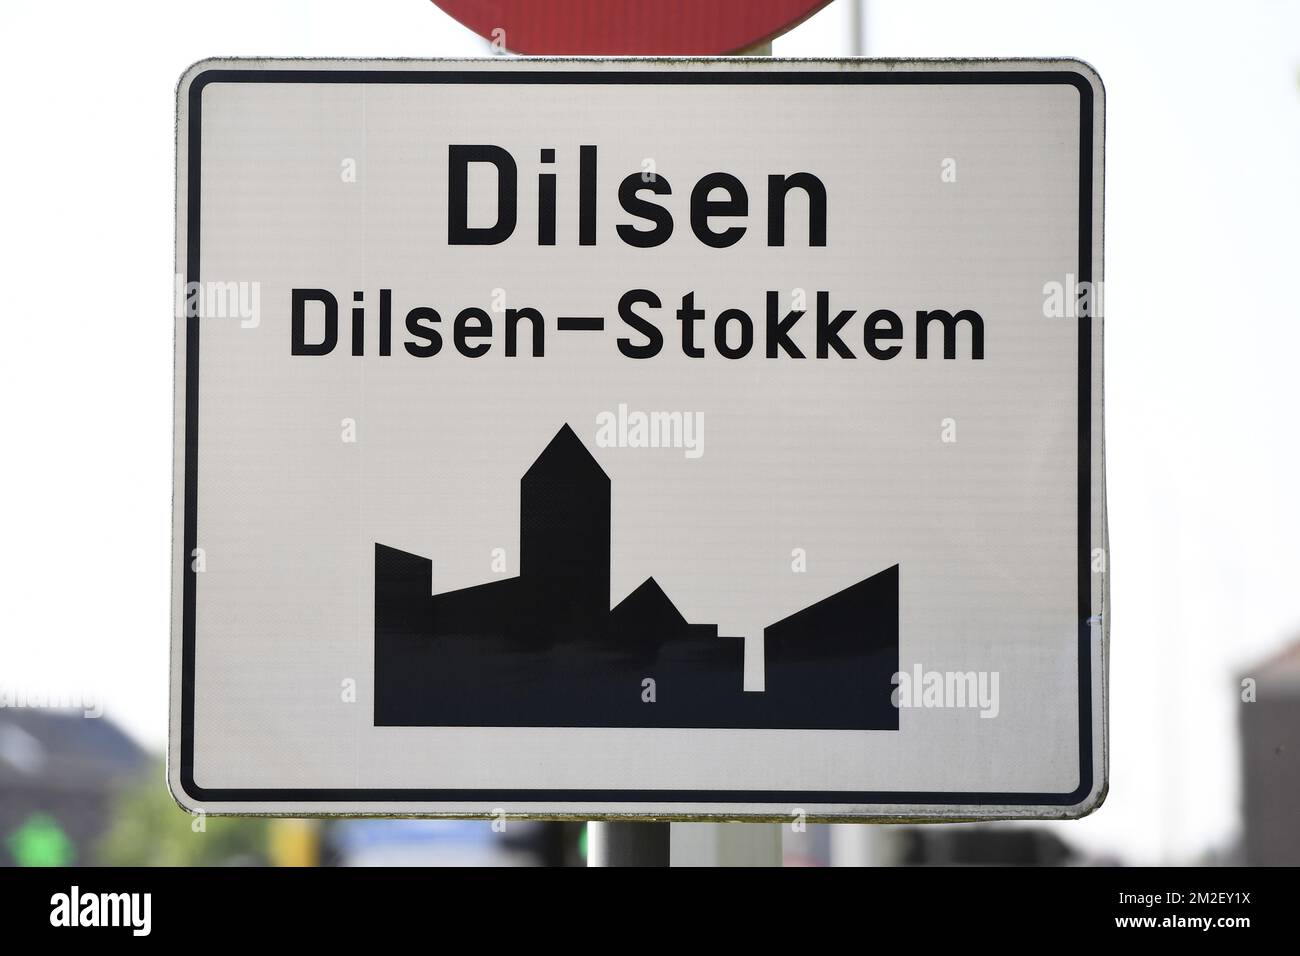 Abbildung zeigt den Namen der Gemeinde Dilsen-Stokkem auf einem Straßenschild, Freitag, 04. Mai 2018. BELGA FOTO YORICK JANSENS Stockfoto